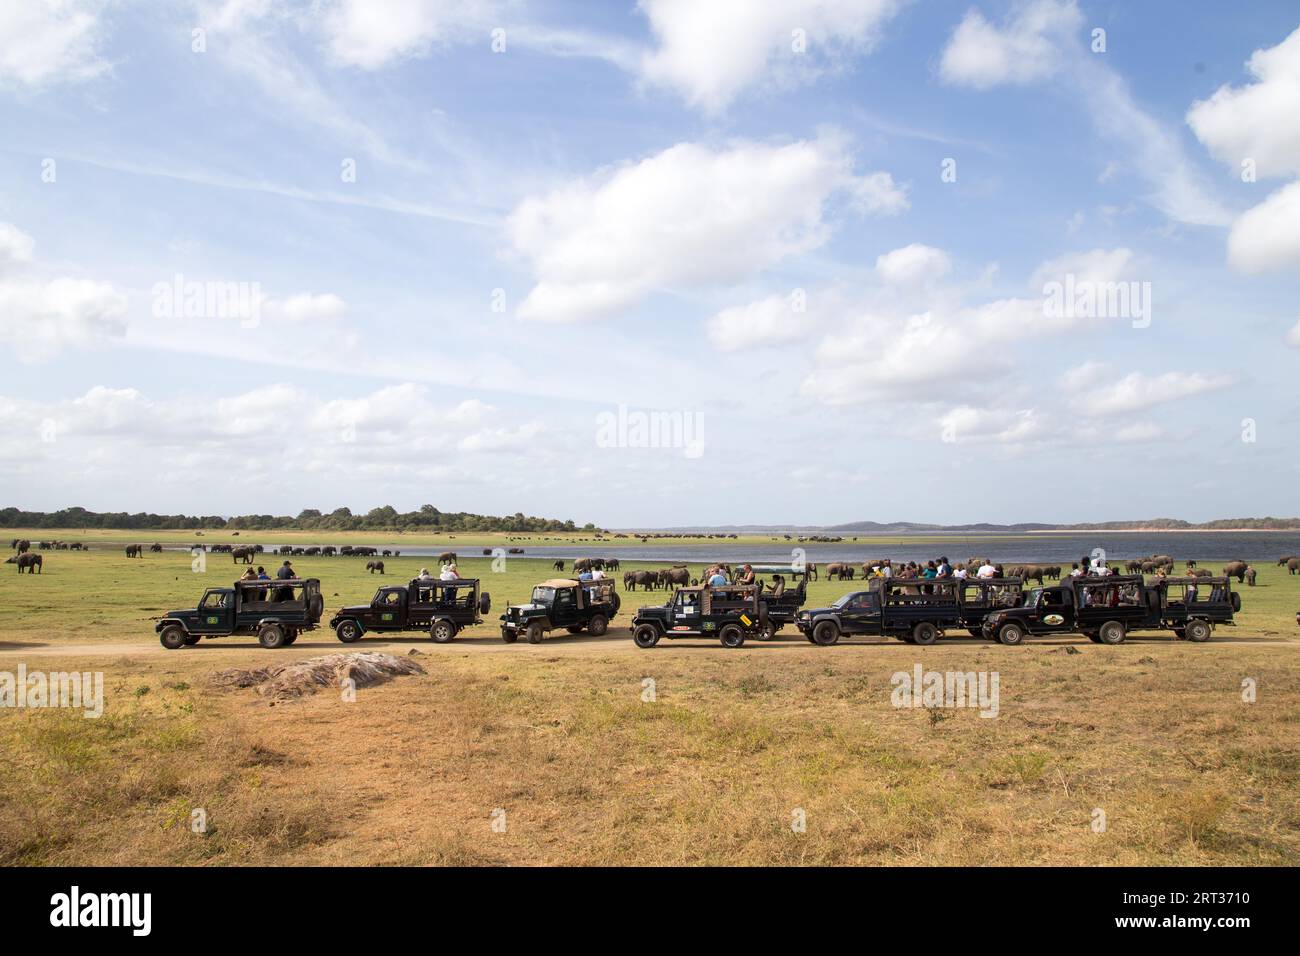 Parc national de Kaudulla, Sri Lanka, 16 août 2018 : Grande rangée de jeeps avec des touristes à l'intérieur du parc national de Kaudulla Banque D'Images